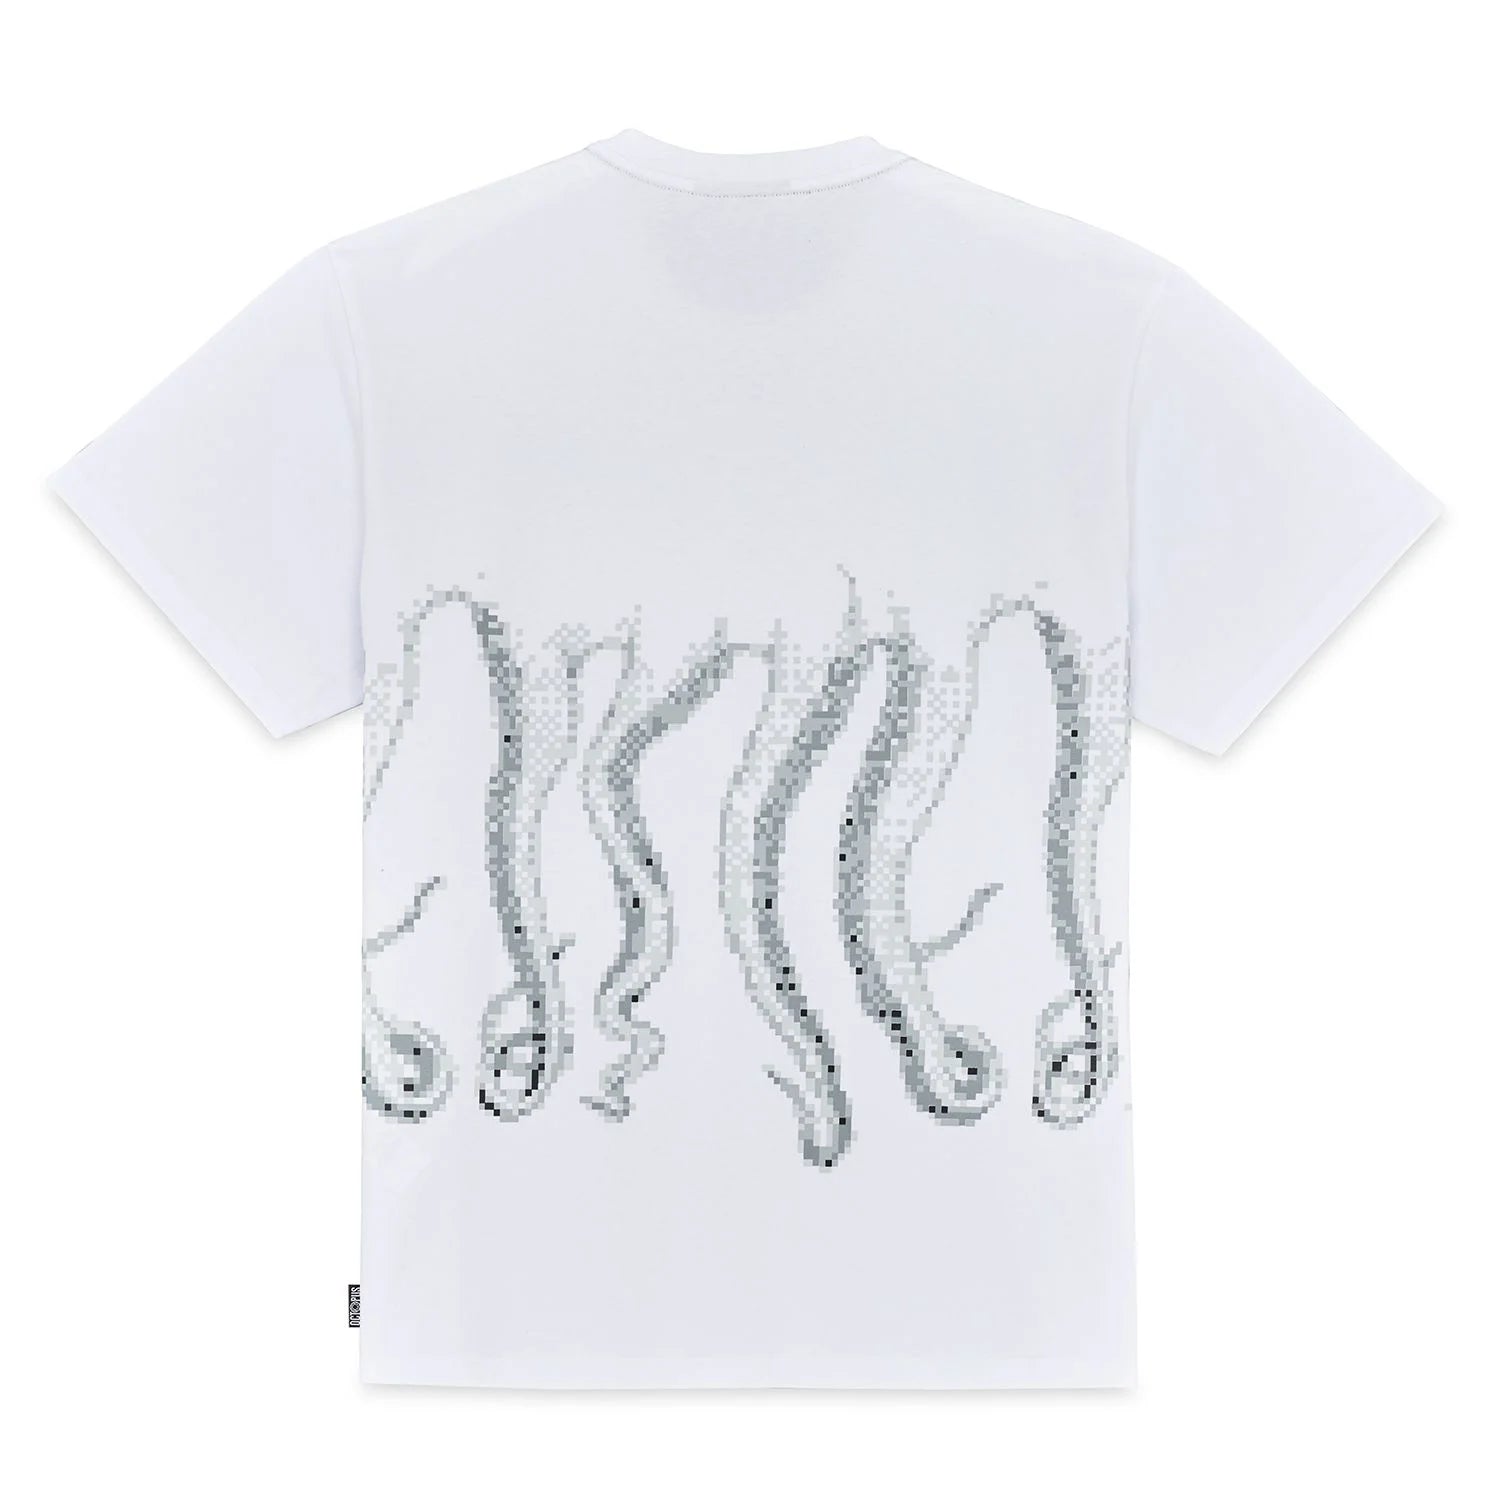 Octopus Censored Outline (White)